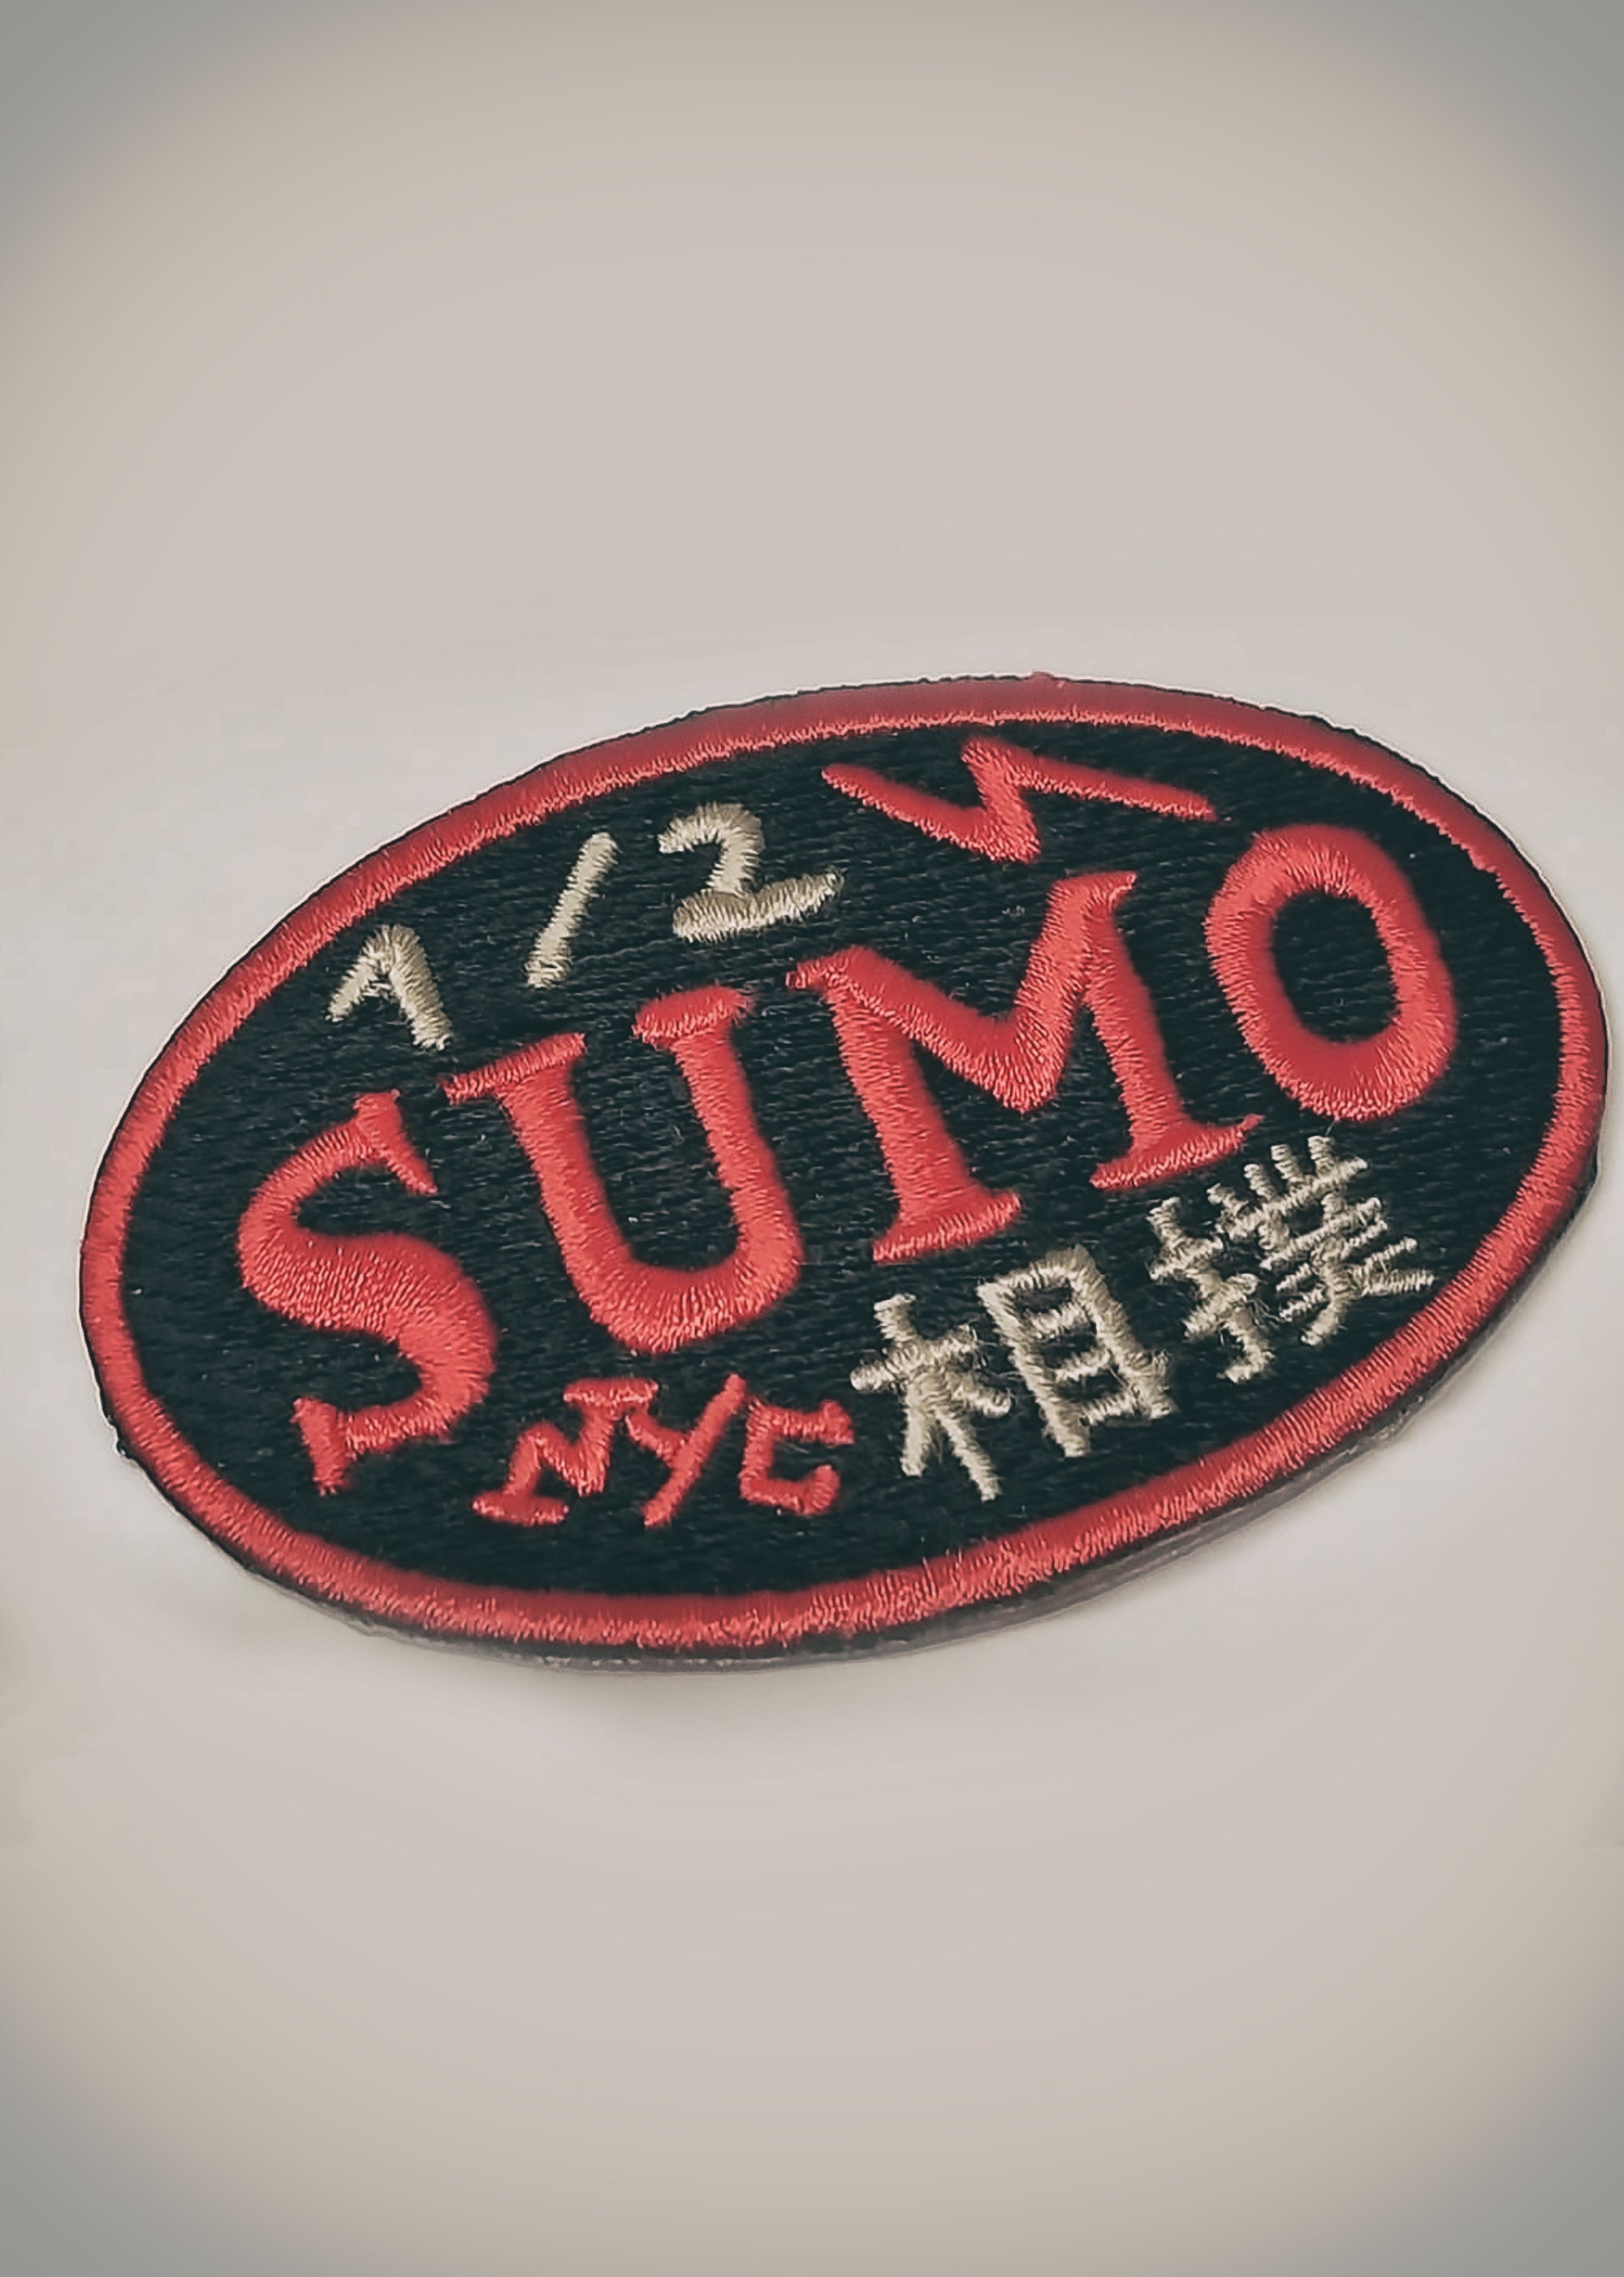 Murder Yoga Sticker Set – Half Sumo